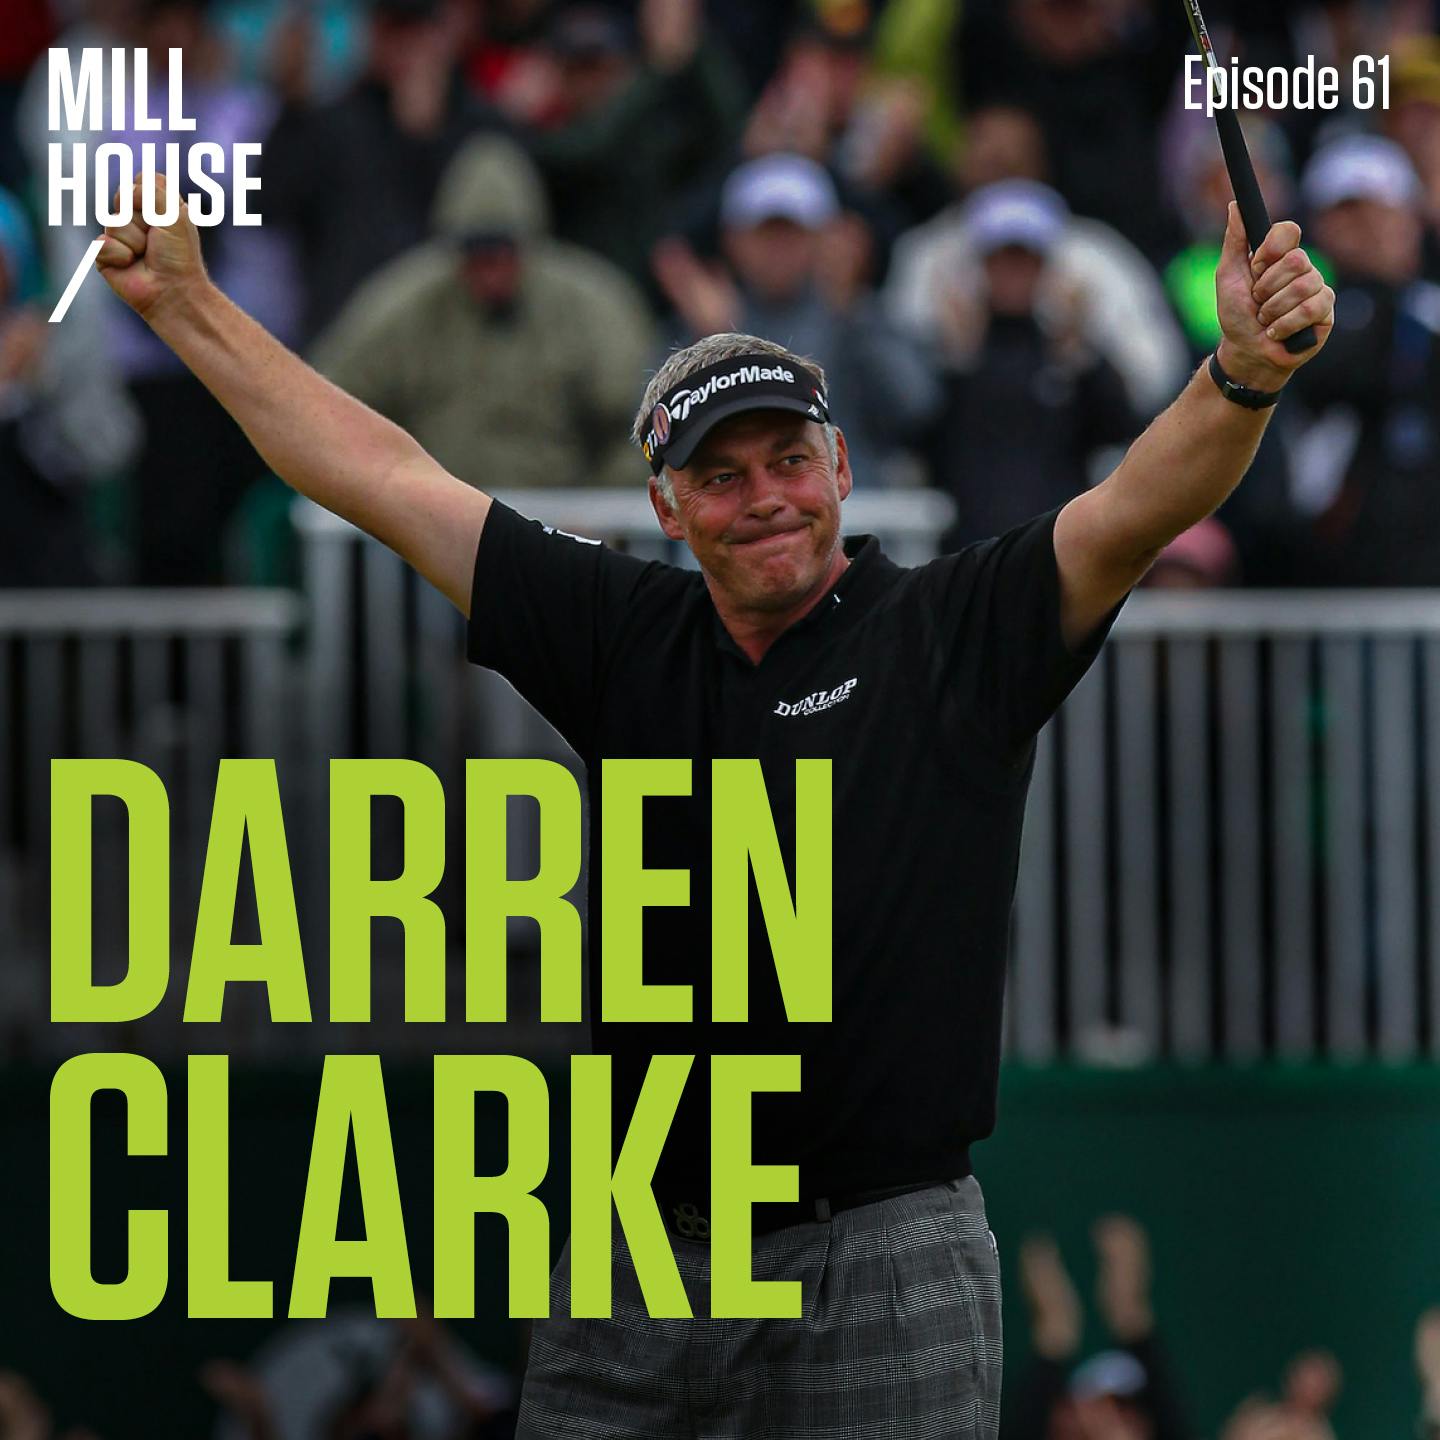 Episode 61: Darren Clarke - Claret Jug to Permit Freak